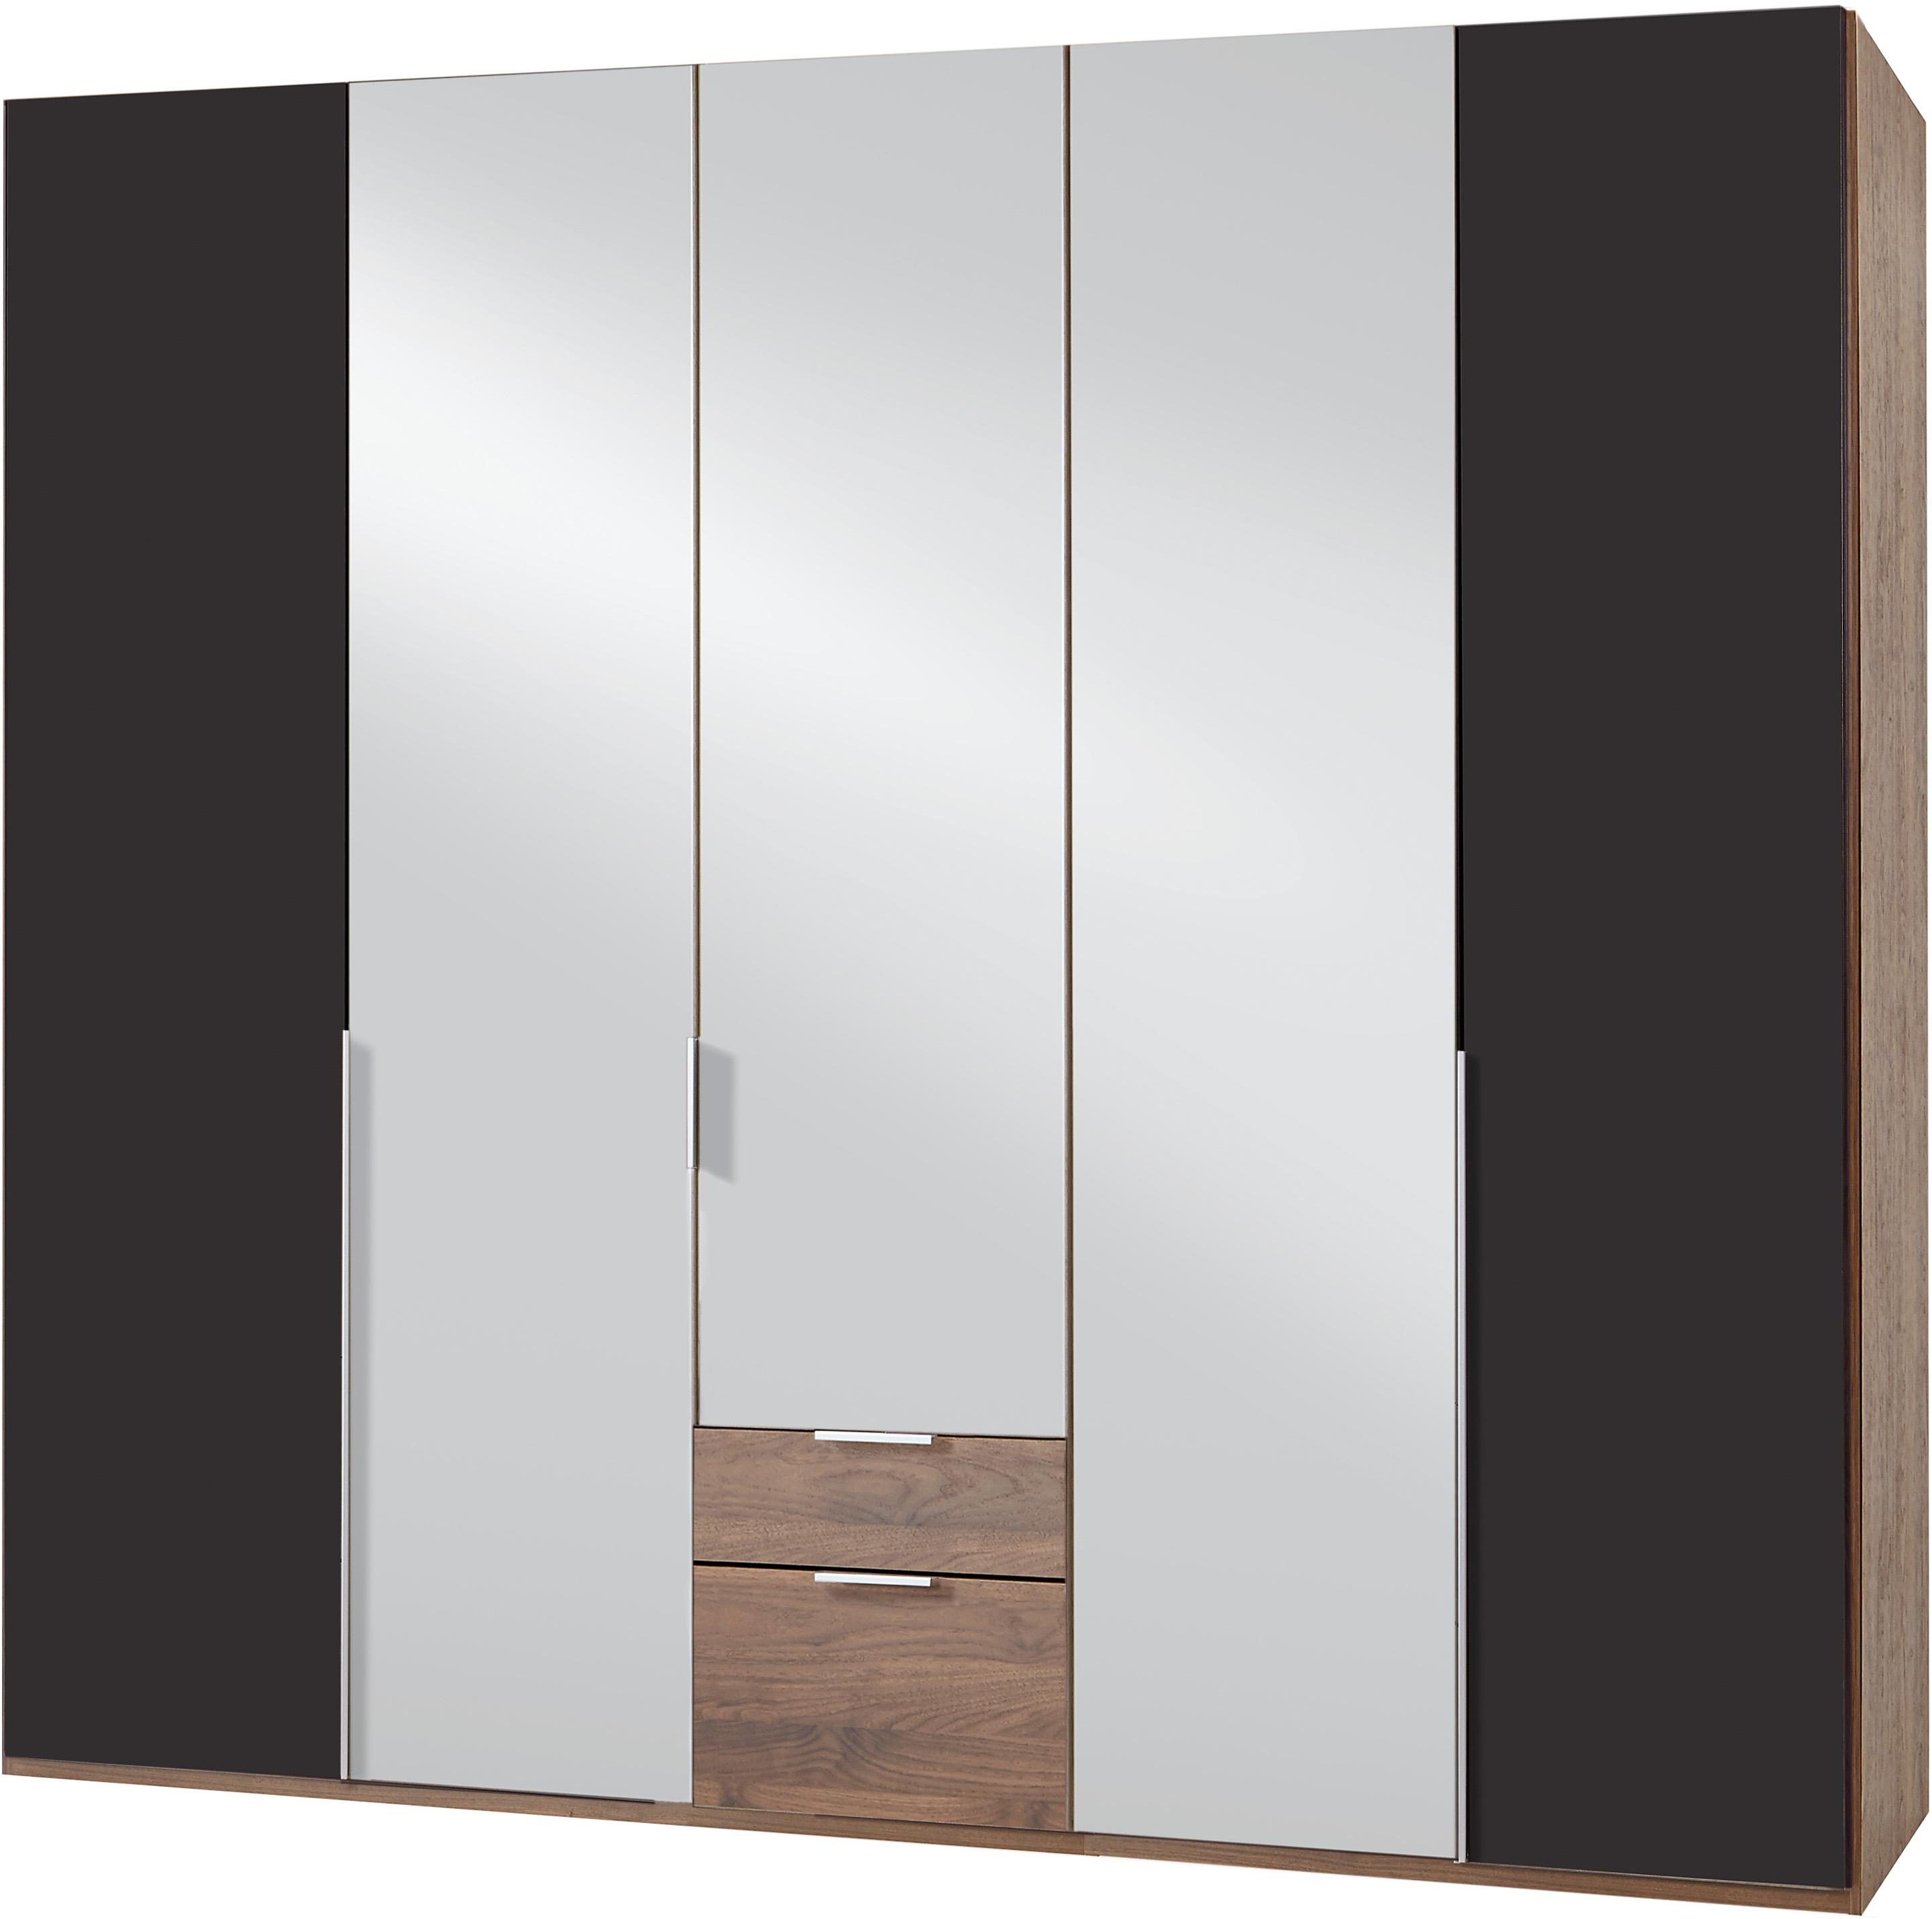 Kledingkasten Wimex garderobekast met spiegeldeuren en laden New York 214033